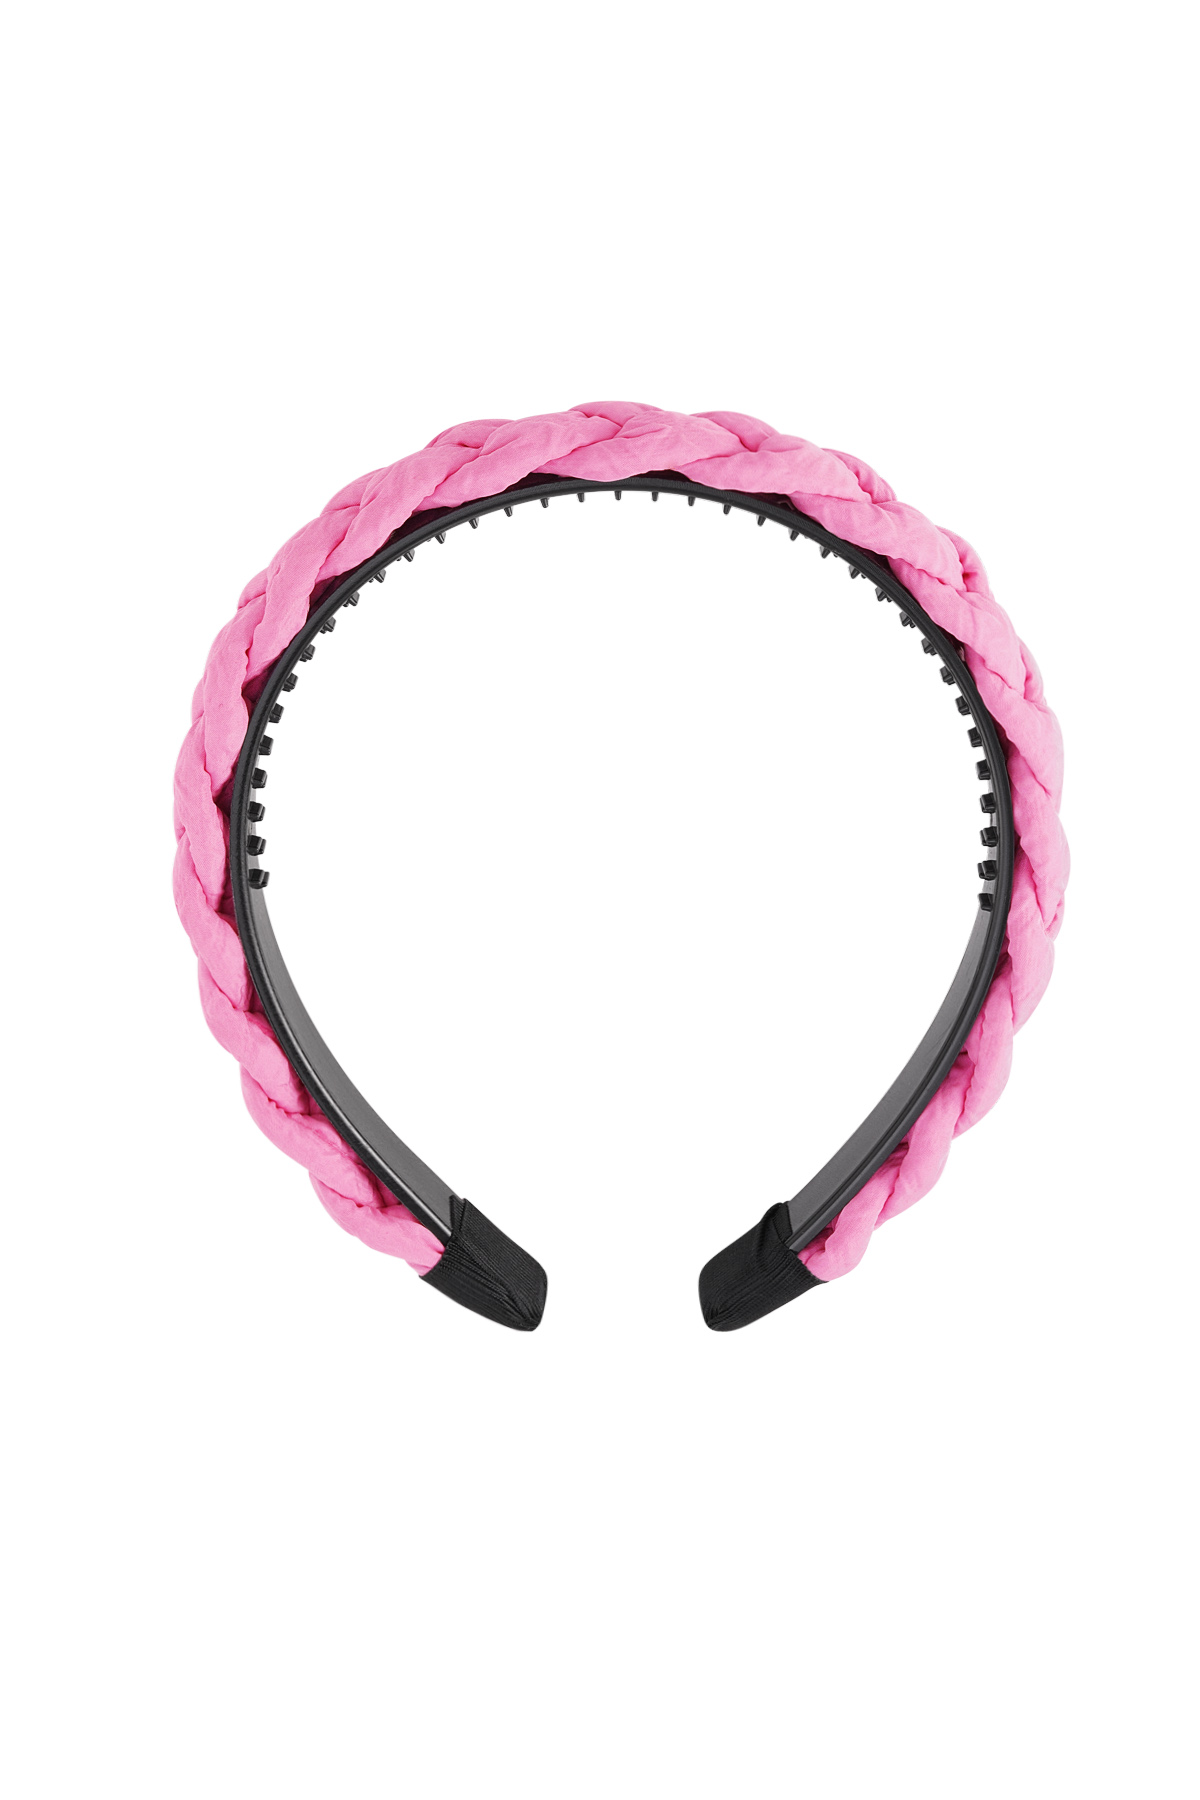 Snood Braid Detail - Pink Plastic h5 